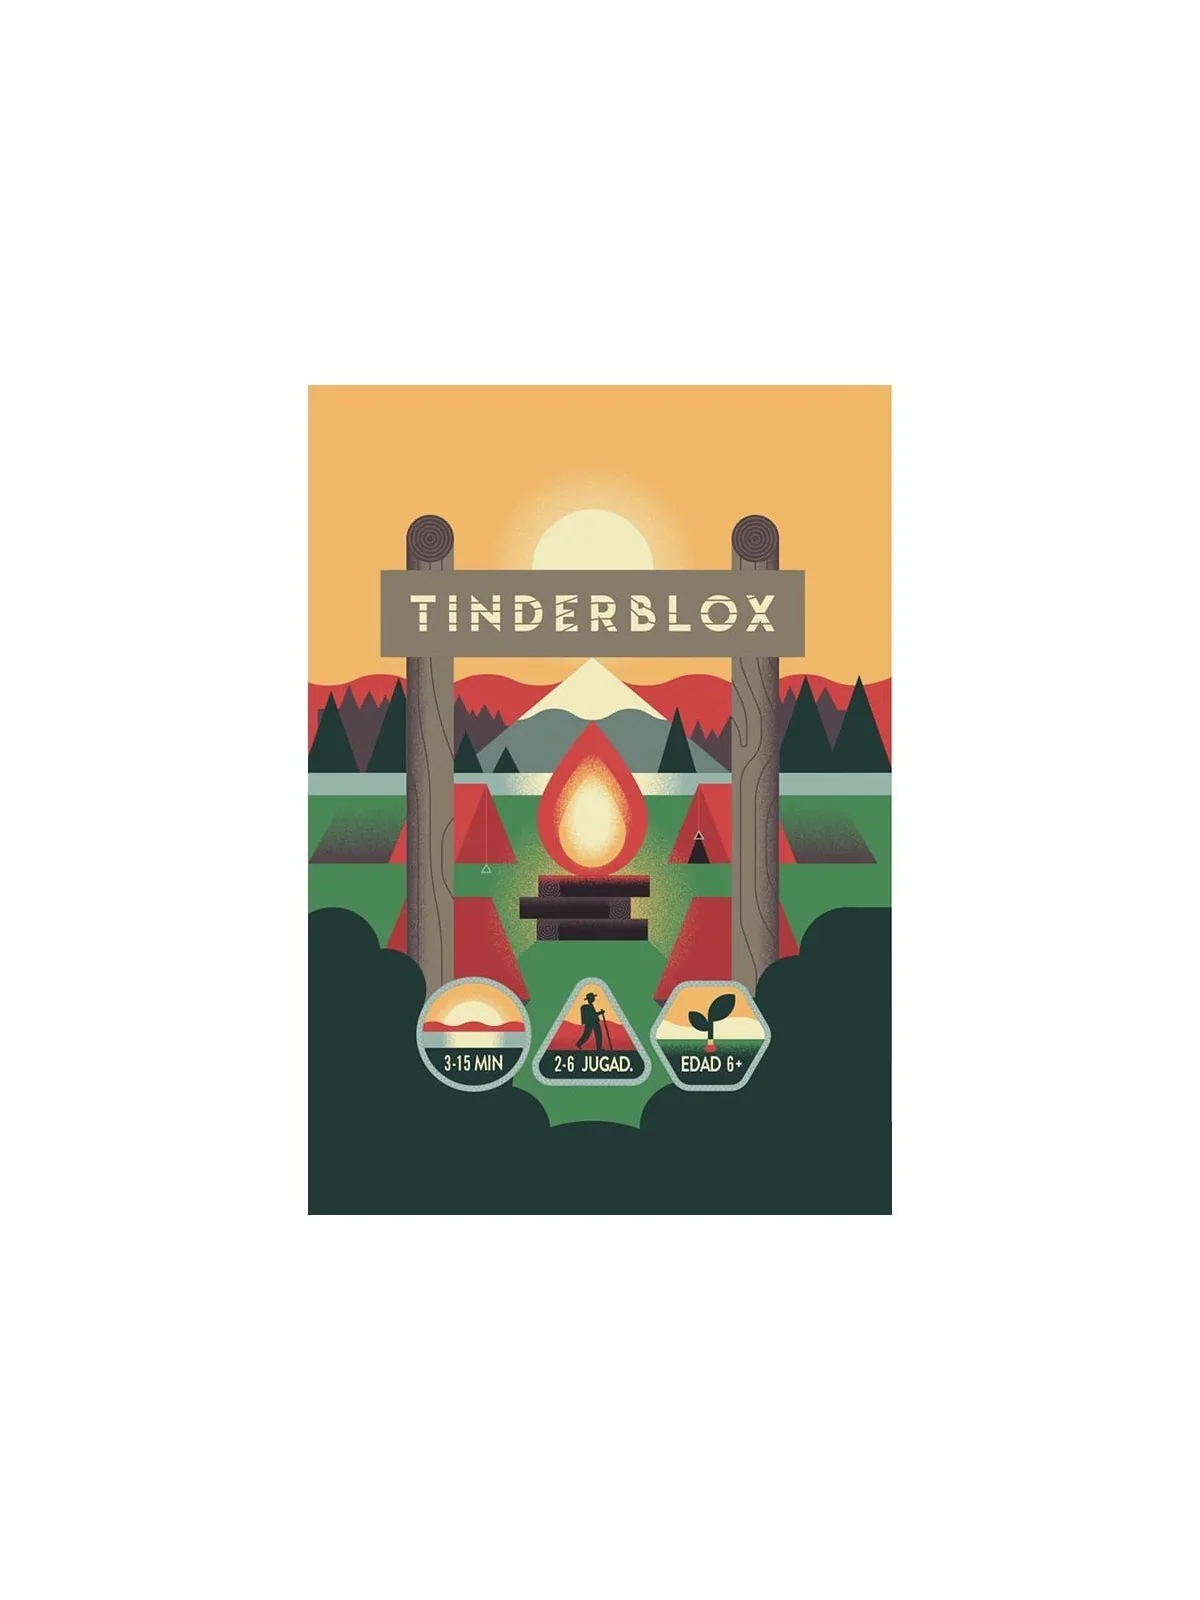 Comprar Tinderblox barato al mejor precio 9,00 € de Maldito Games